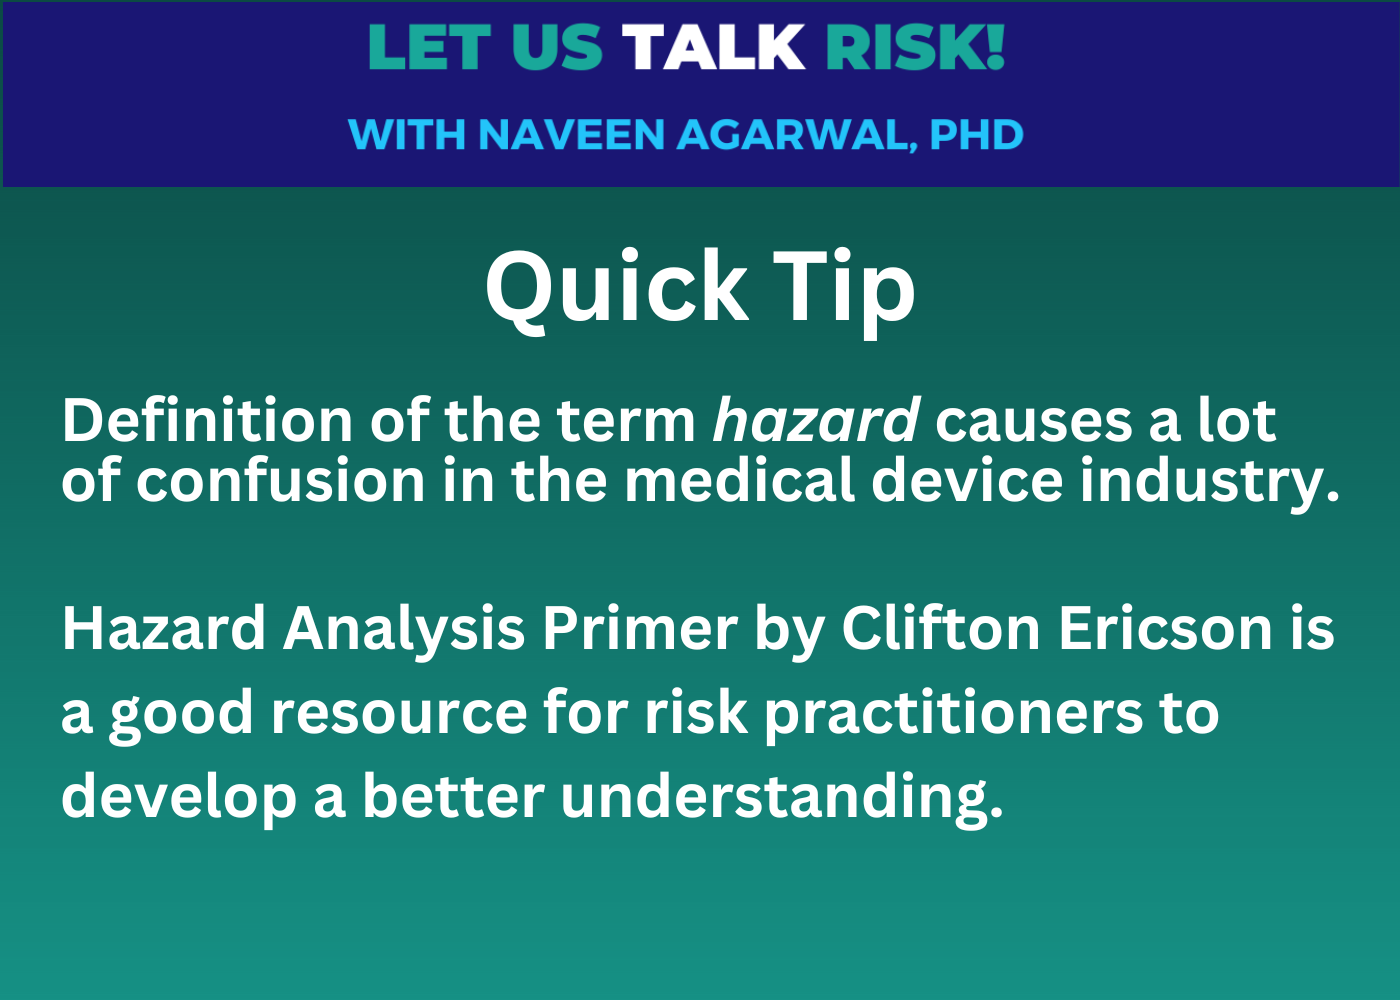 Quick Tip - Hazard Analysis Primer